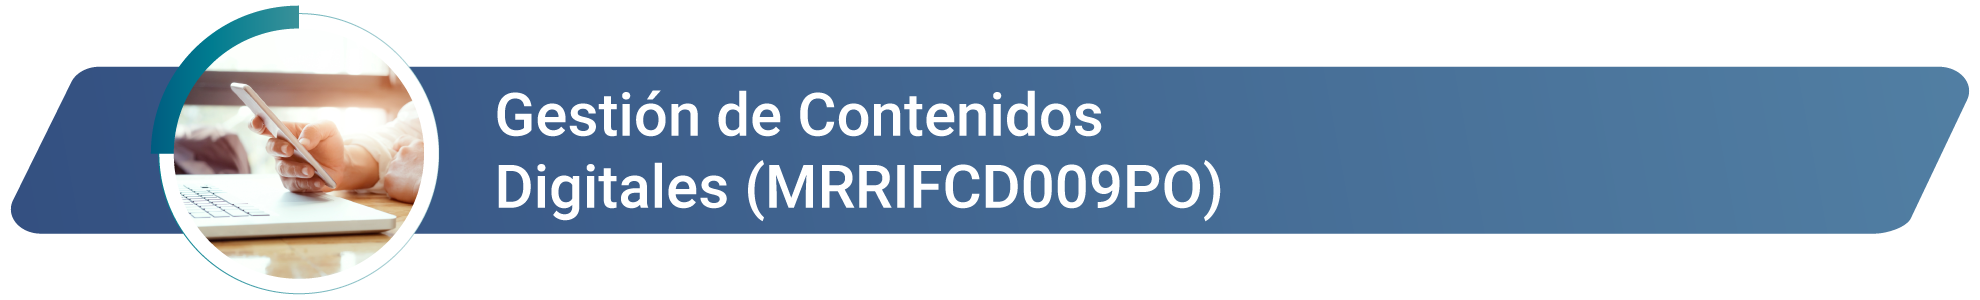 MRRIFCD009PO - Gestión de Contenidos Digitales